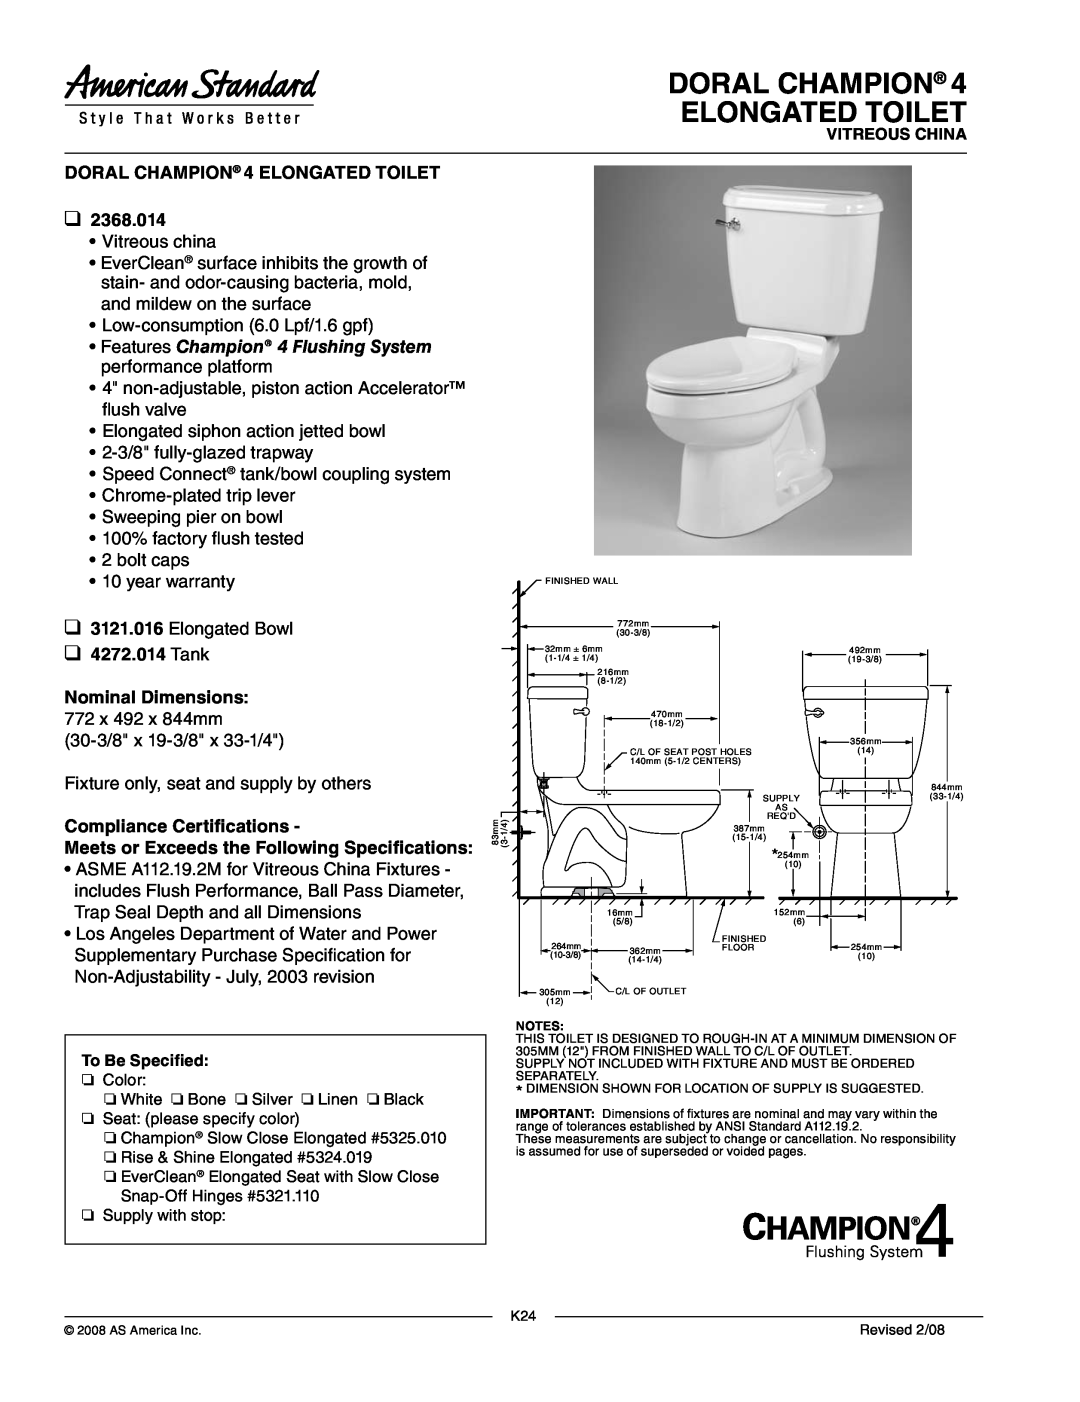 American Standard 4272.014 dimensions Doral Champion Elongated Toilet, DORAL CHAMPION 4 ELONGATED TOILET, 2368.014 